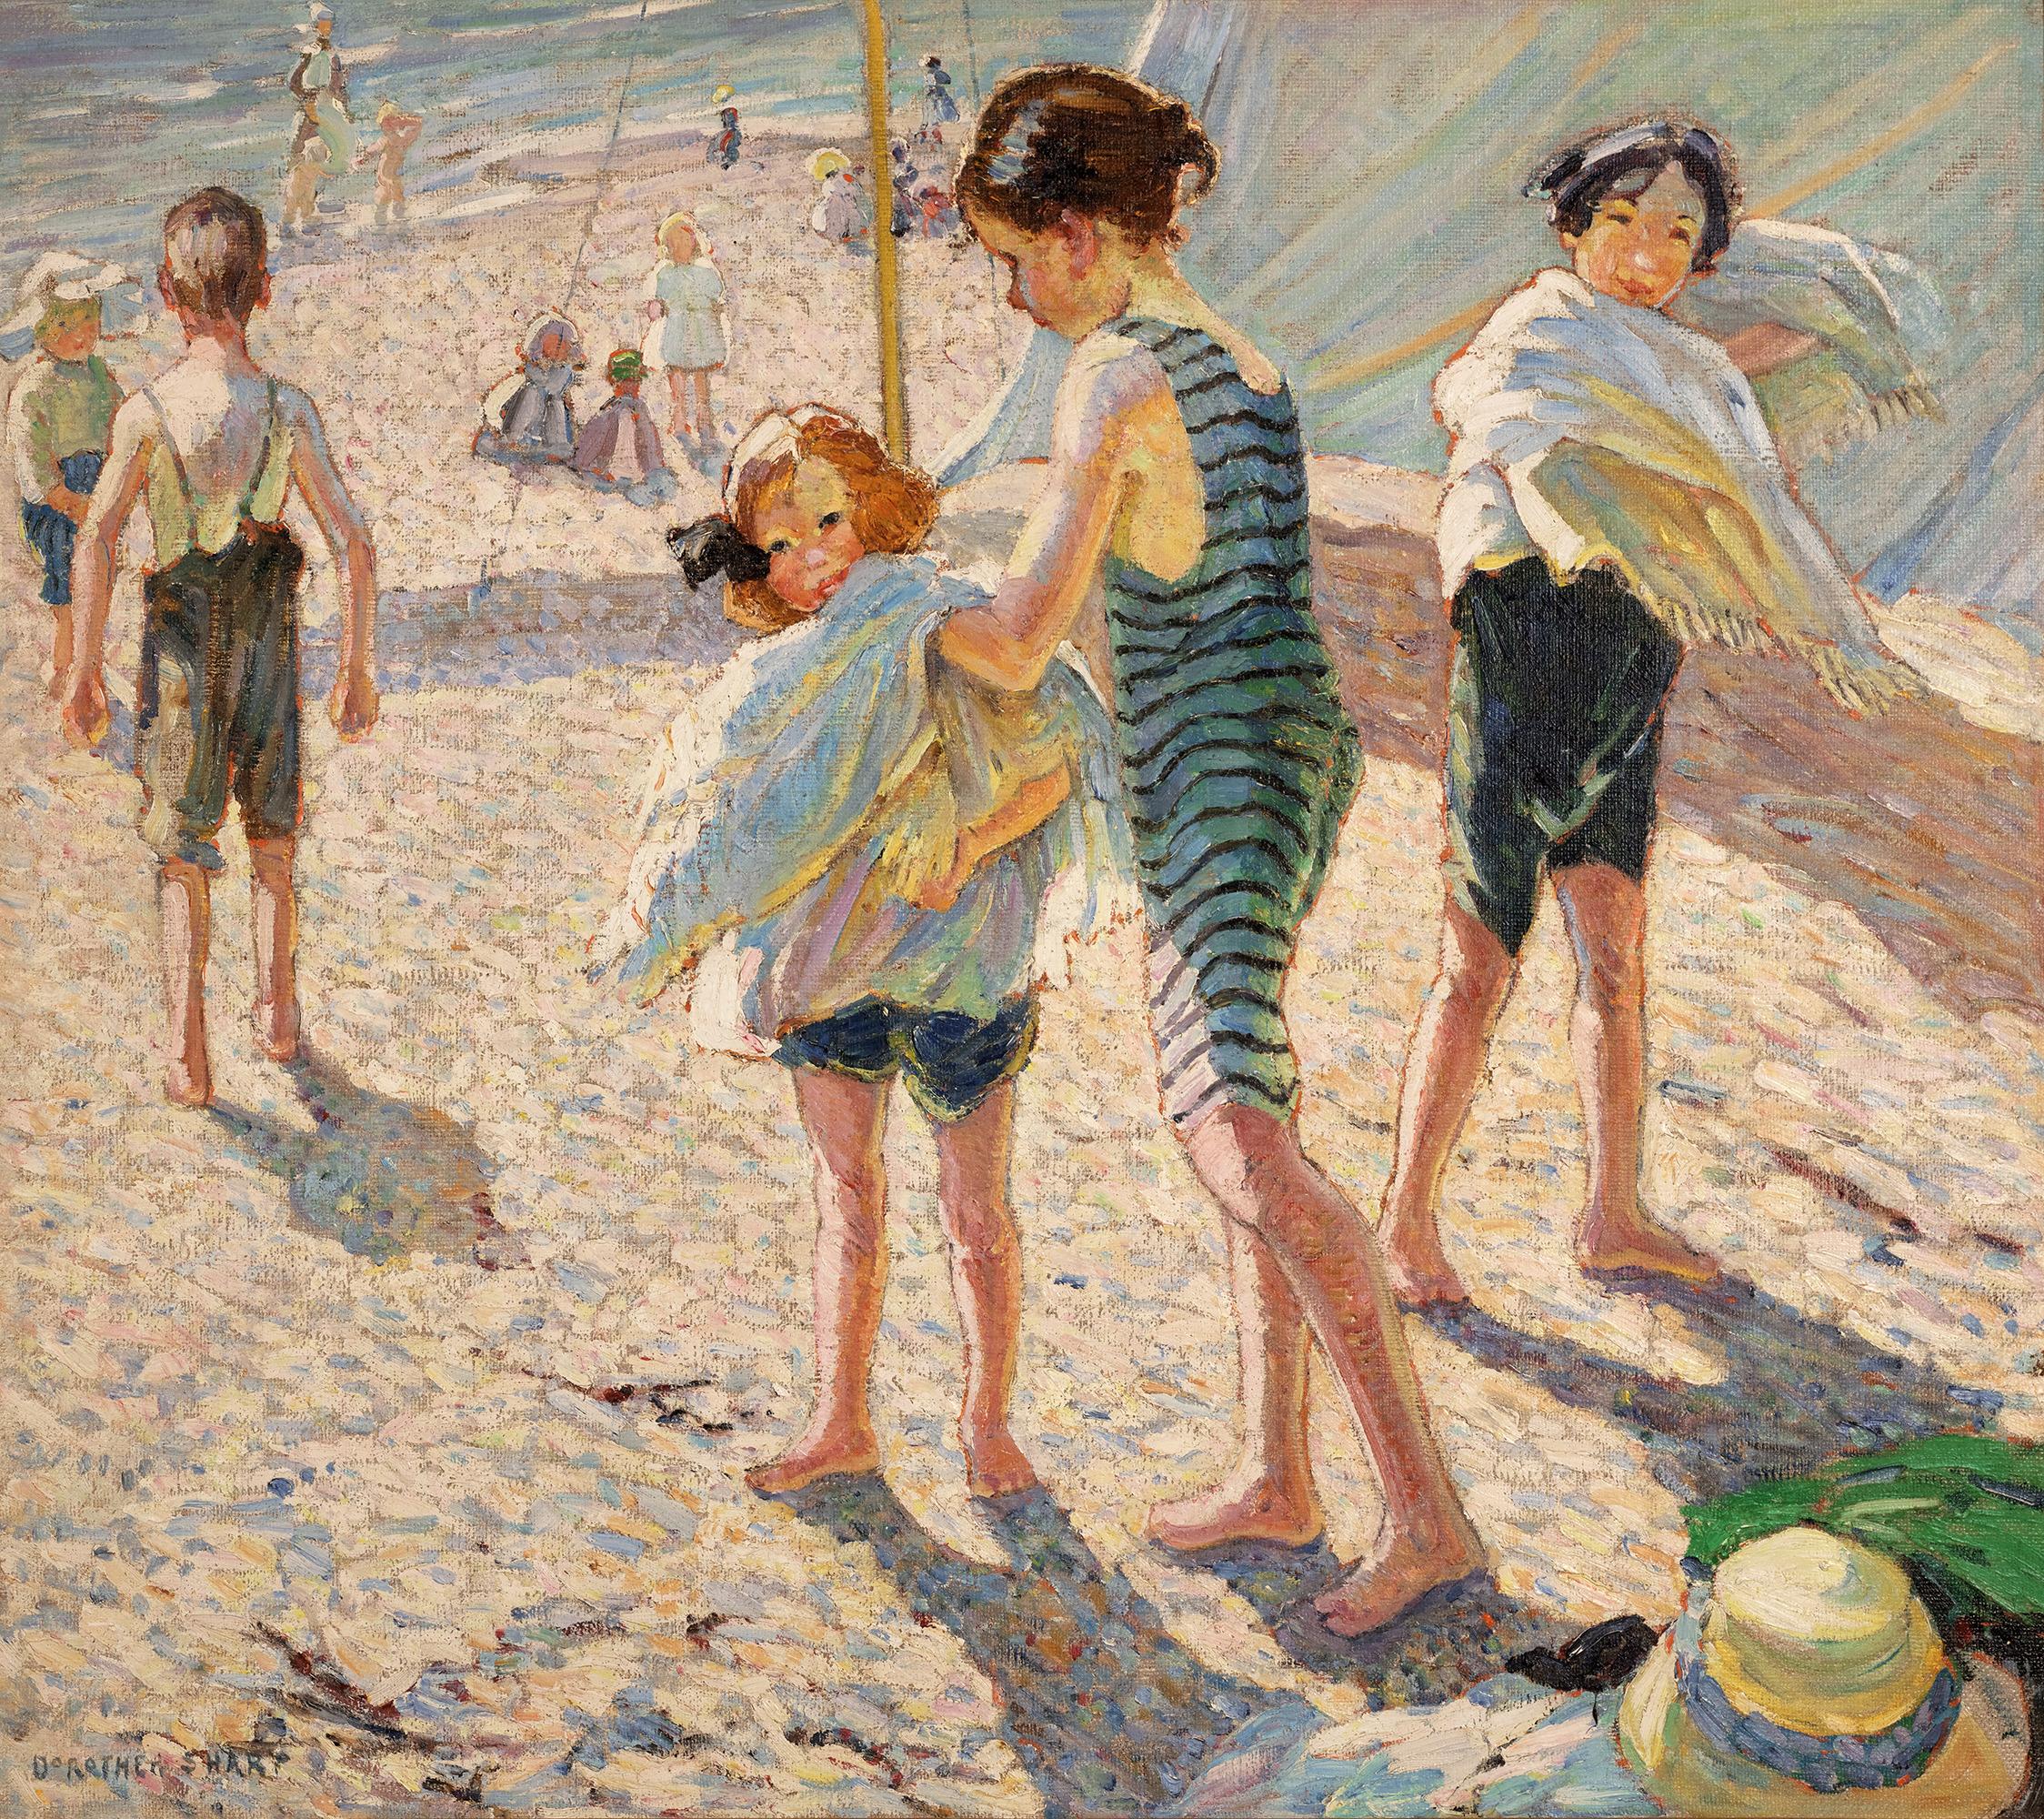 Dorothea Sharp
1874-1955  Britannique

Une journée à la plage

Signé "Dorothea Sharp" (en bas à gauche)
Huile sur toile

La peintre britannique Dorothea Sharp capture l'esprit joyeux de l'enfance dans cette scène enchanteresse de bord de mer.